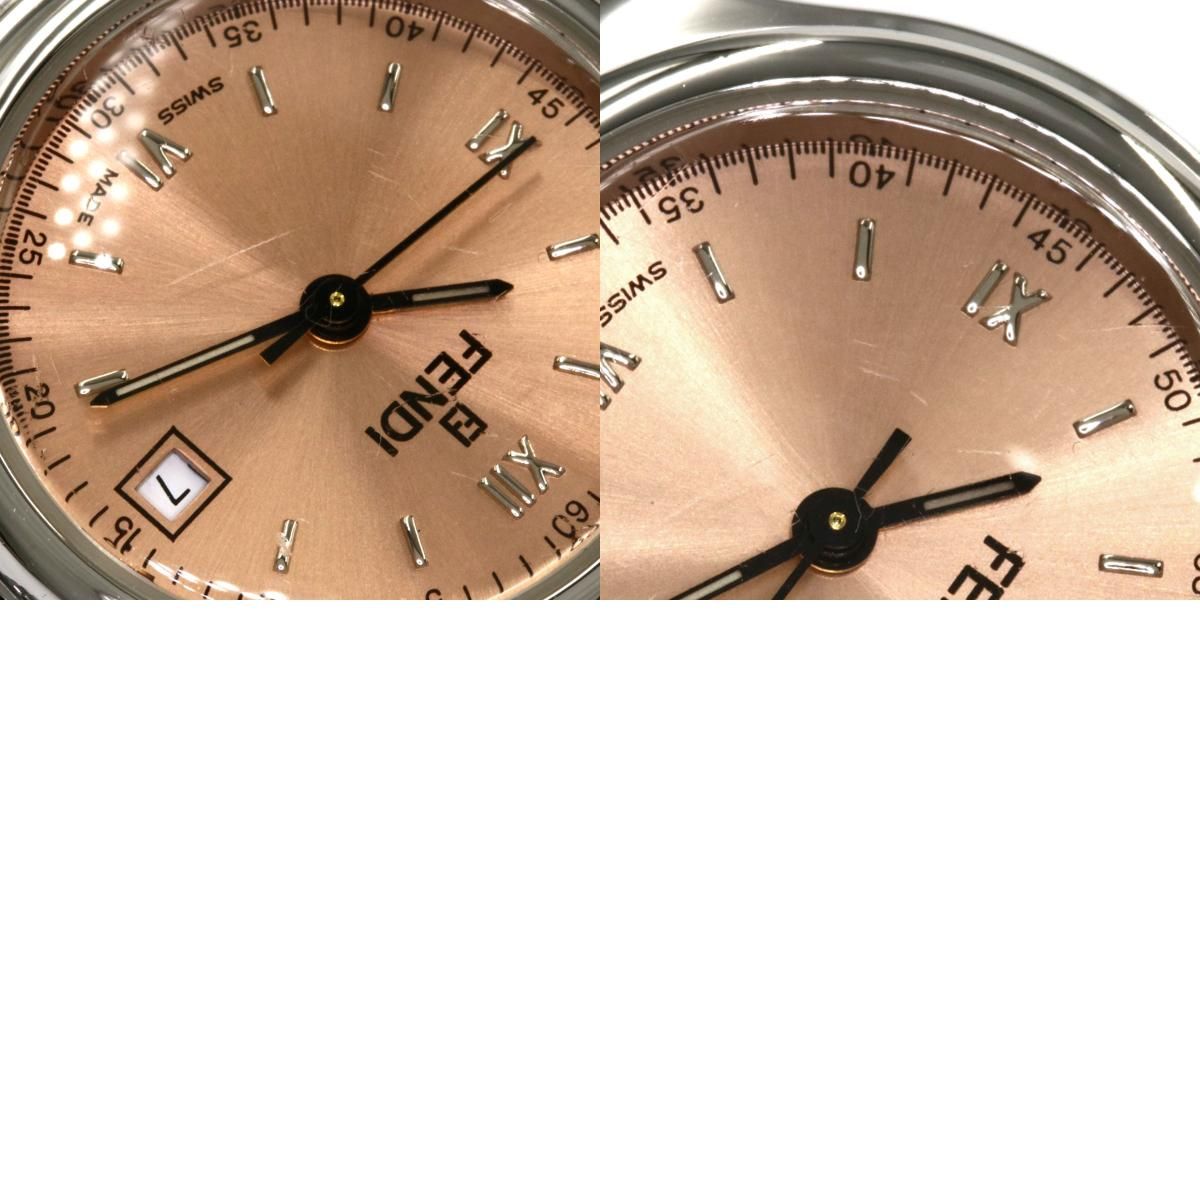 FENDI 210L ラウンドフェイス 腕時計 SS SS レディース腕時計タイプ 